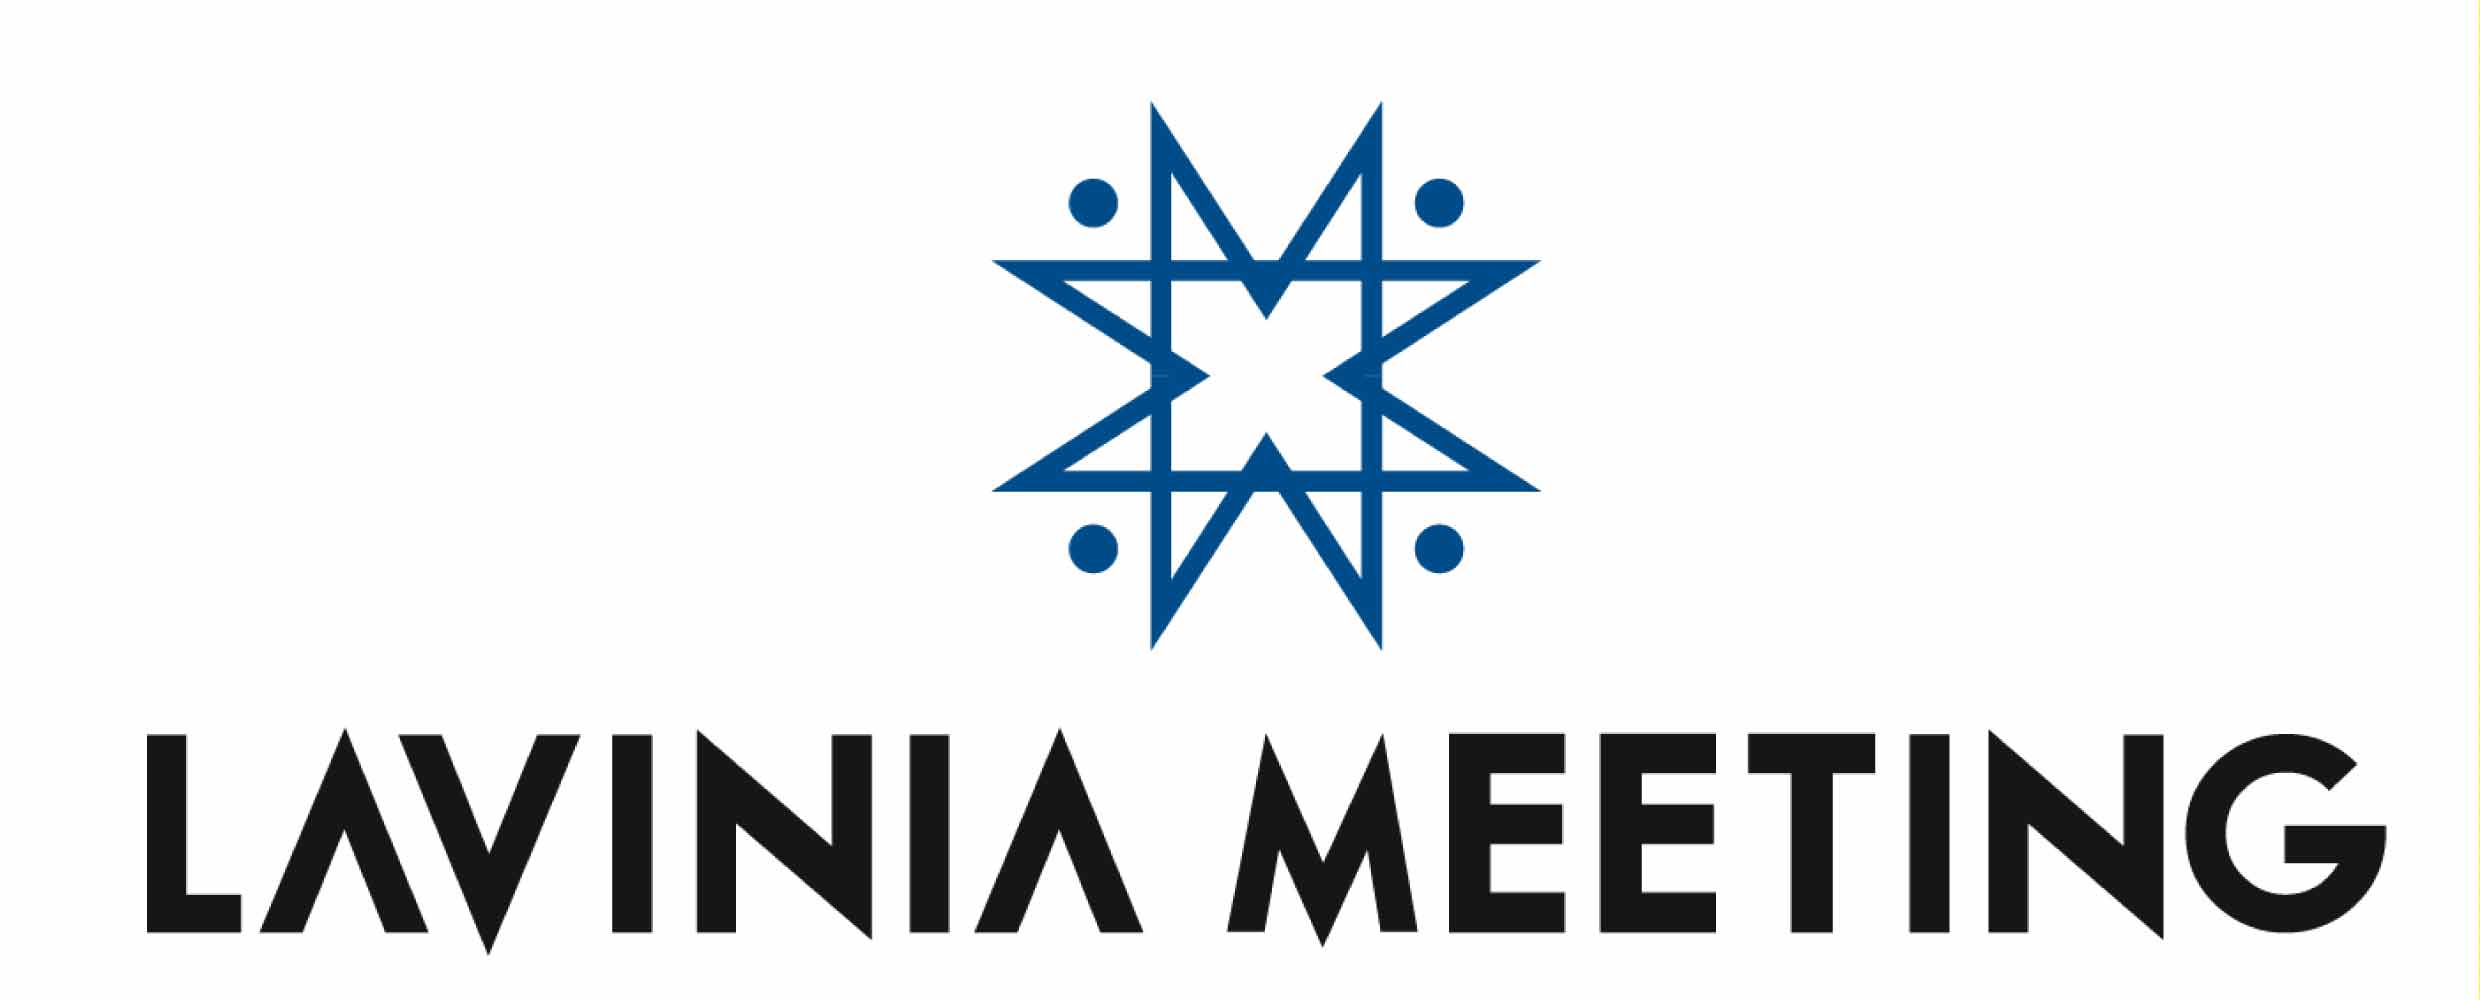 meeting logo trani